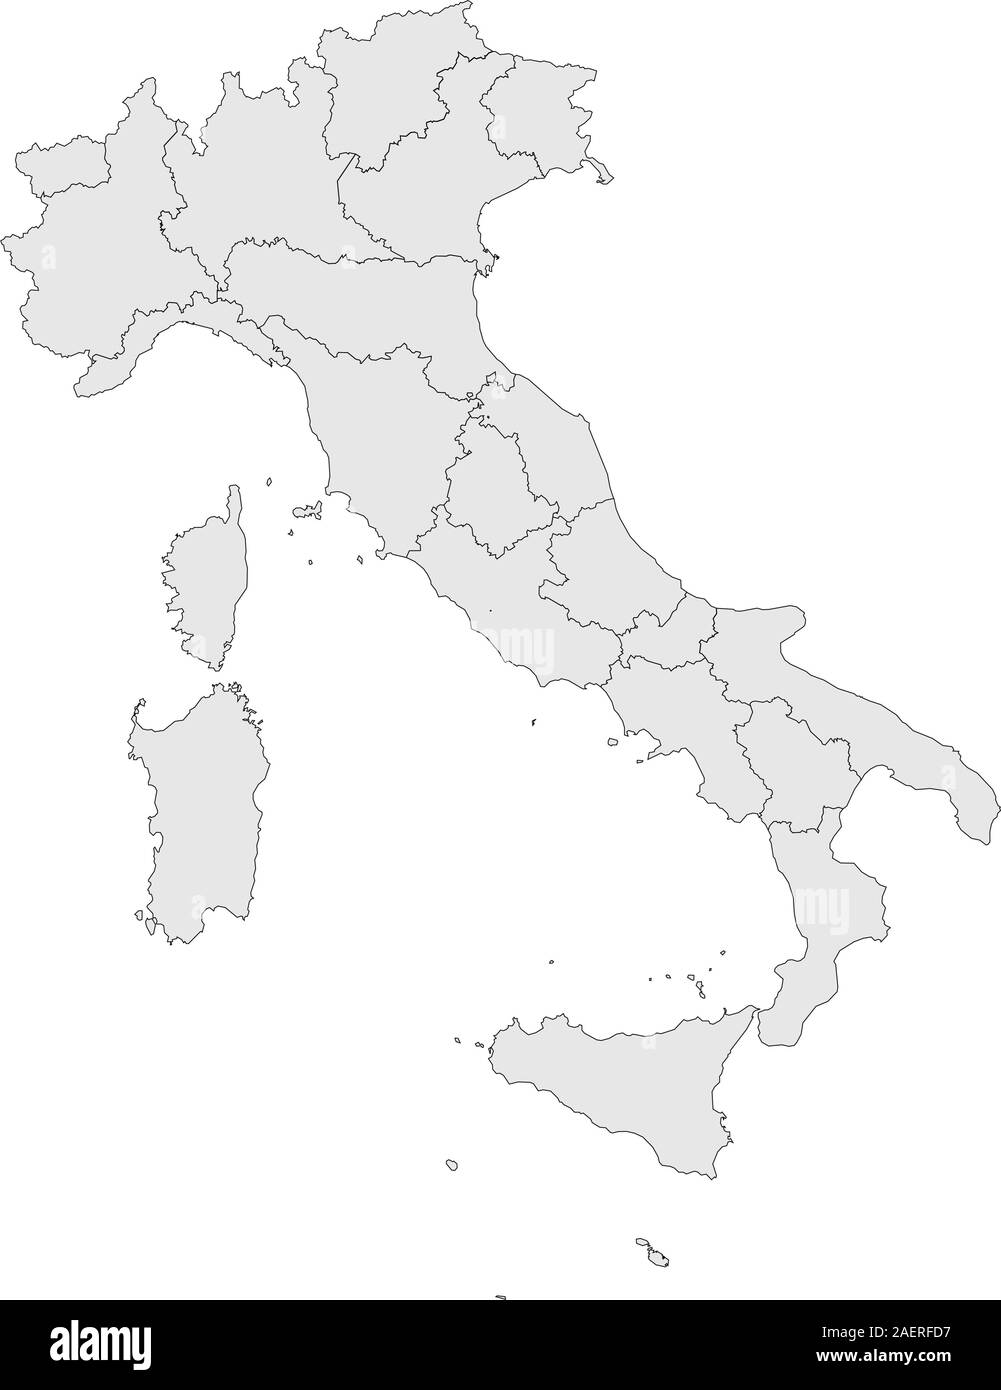 Italia mappa politica illustrazione vettoriale. Colore grigio chiaro. Illustrazione Vettoriale